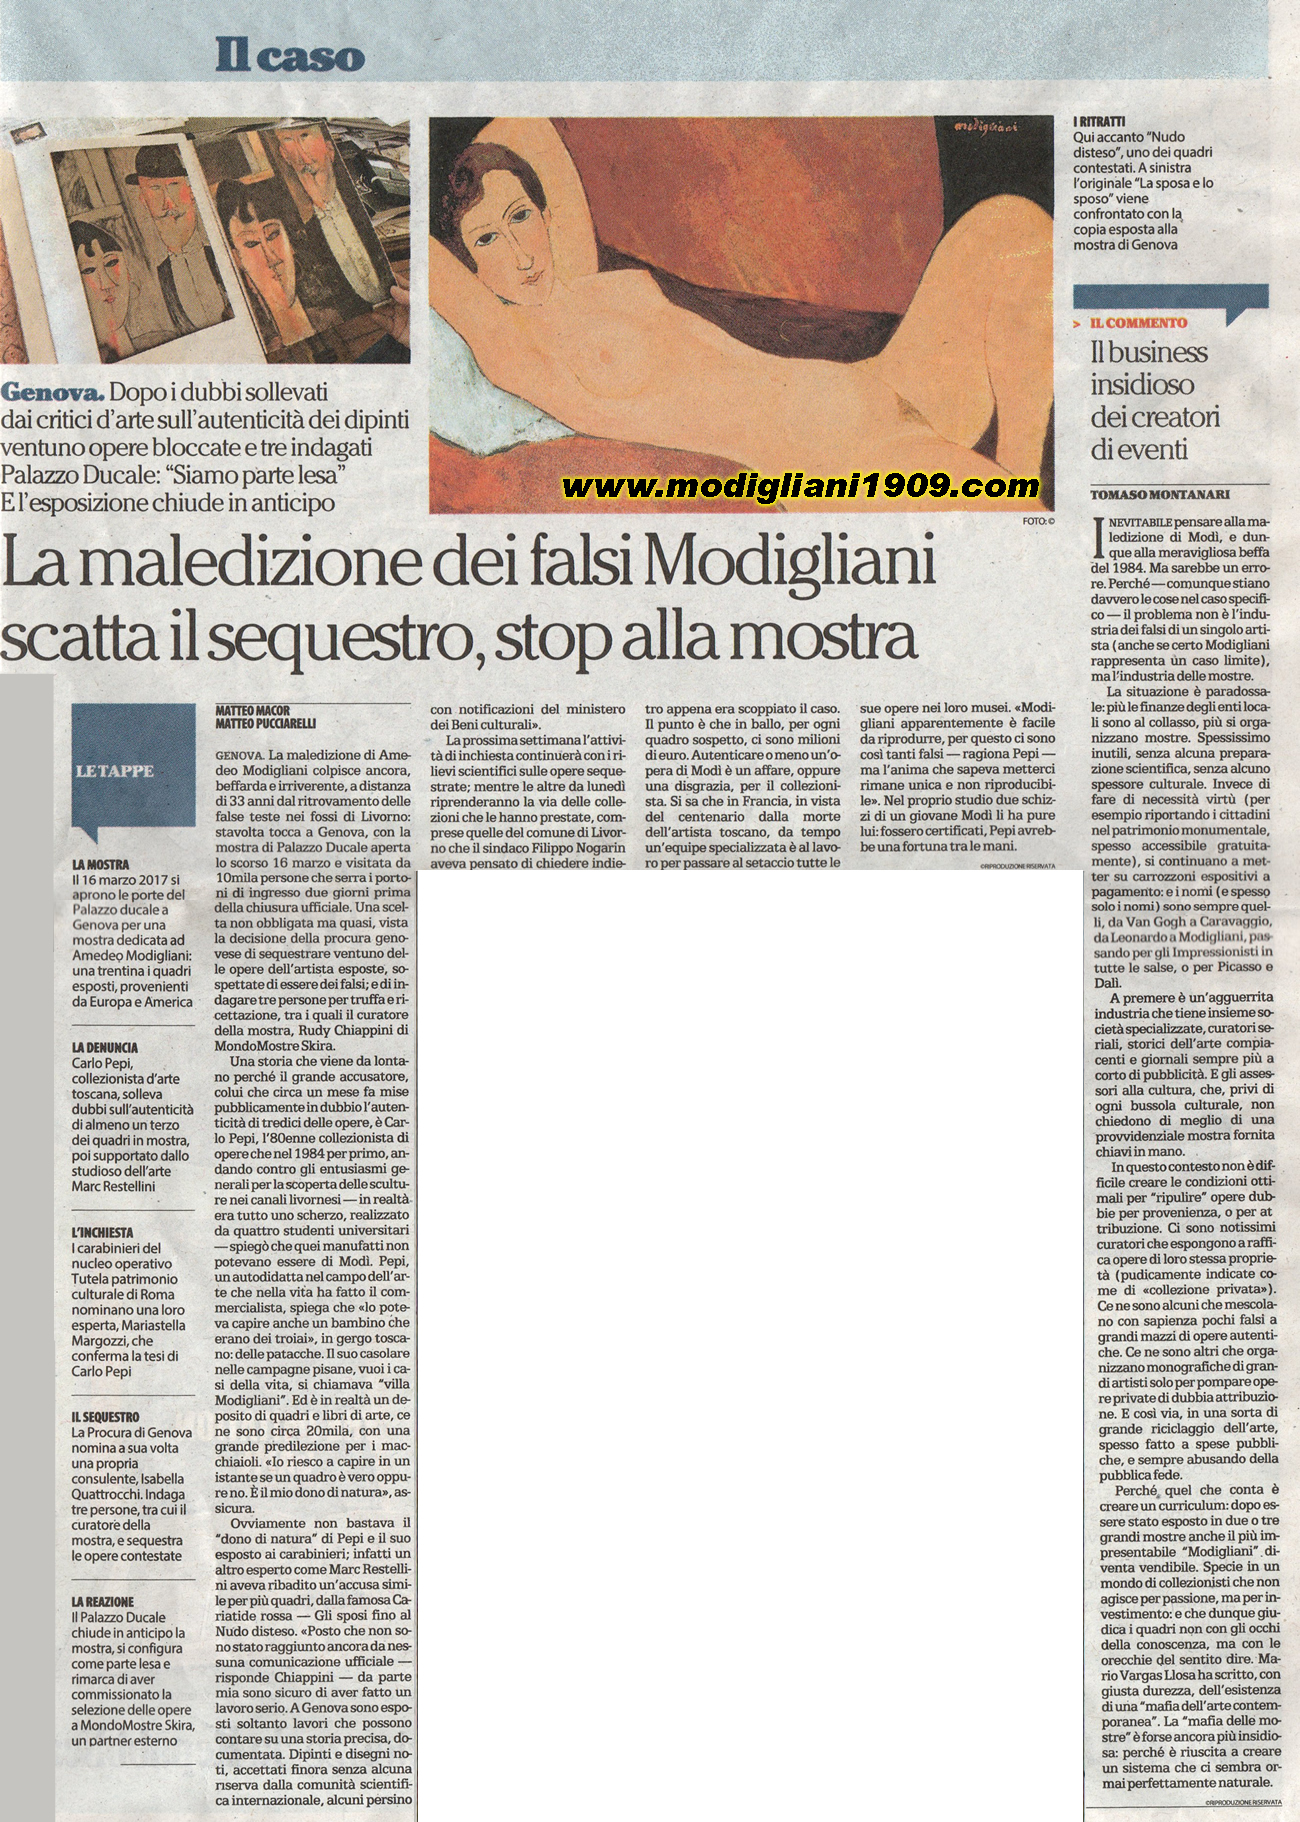 la maledizione dei falsi Modigliani, scatta il sequestro, stop alla mostra - La Repubblica